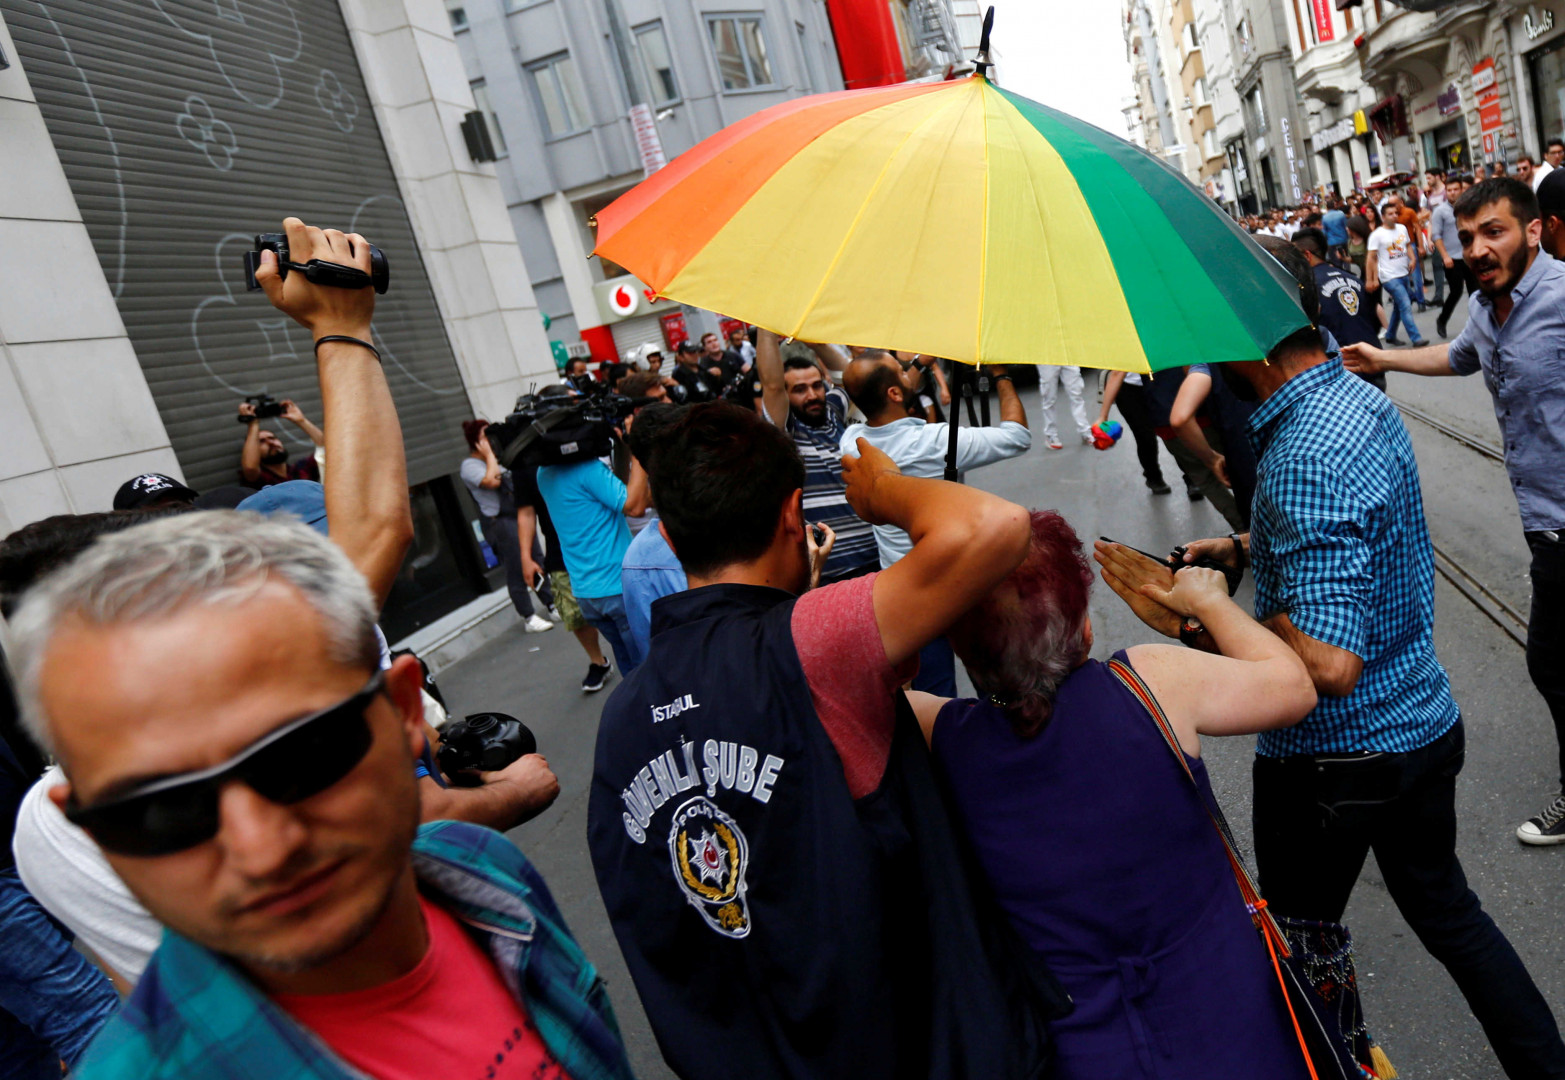 تركيا تفرض رمز "+18" على منتجات المثليين